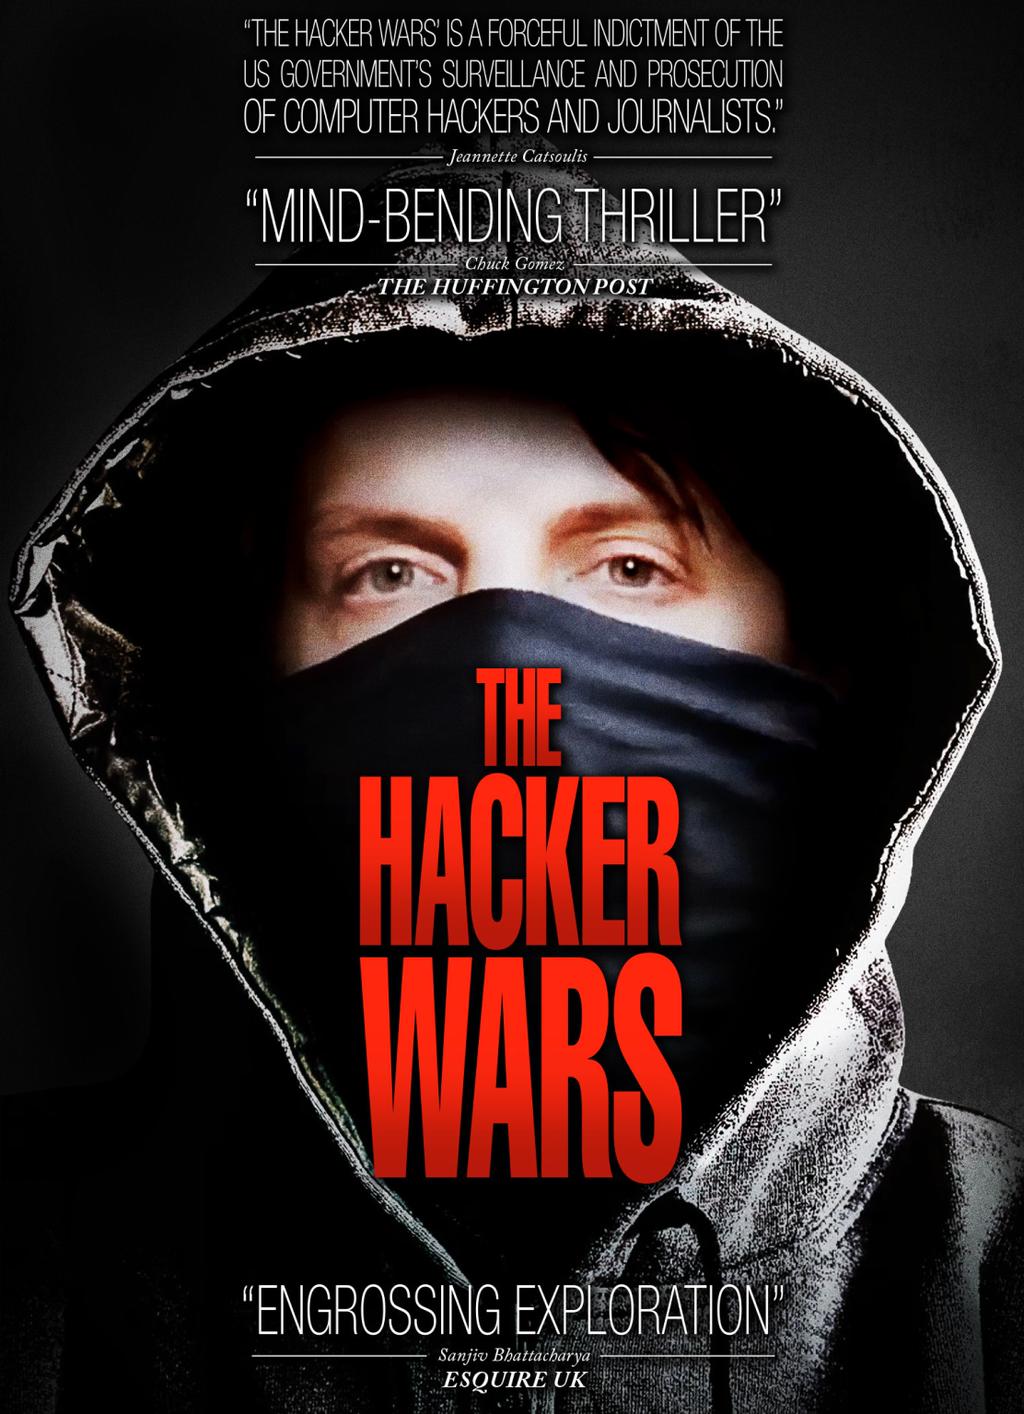 The Hacker Wars (2014)